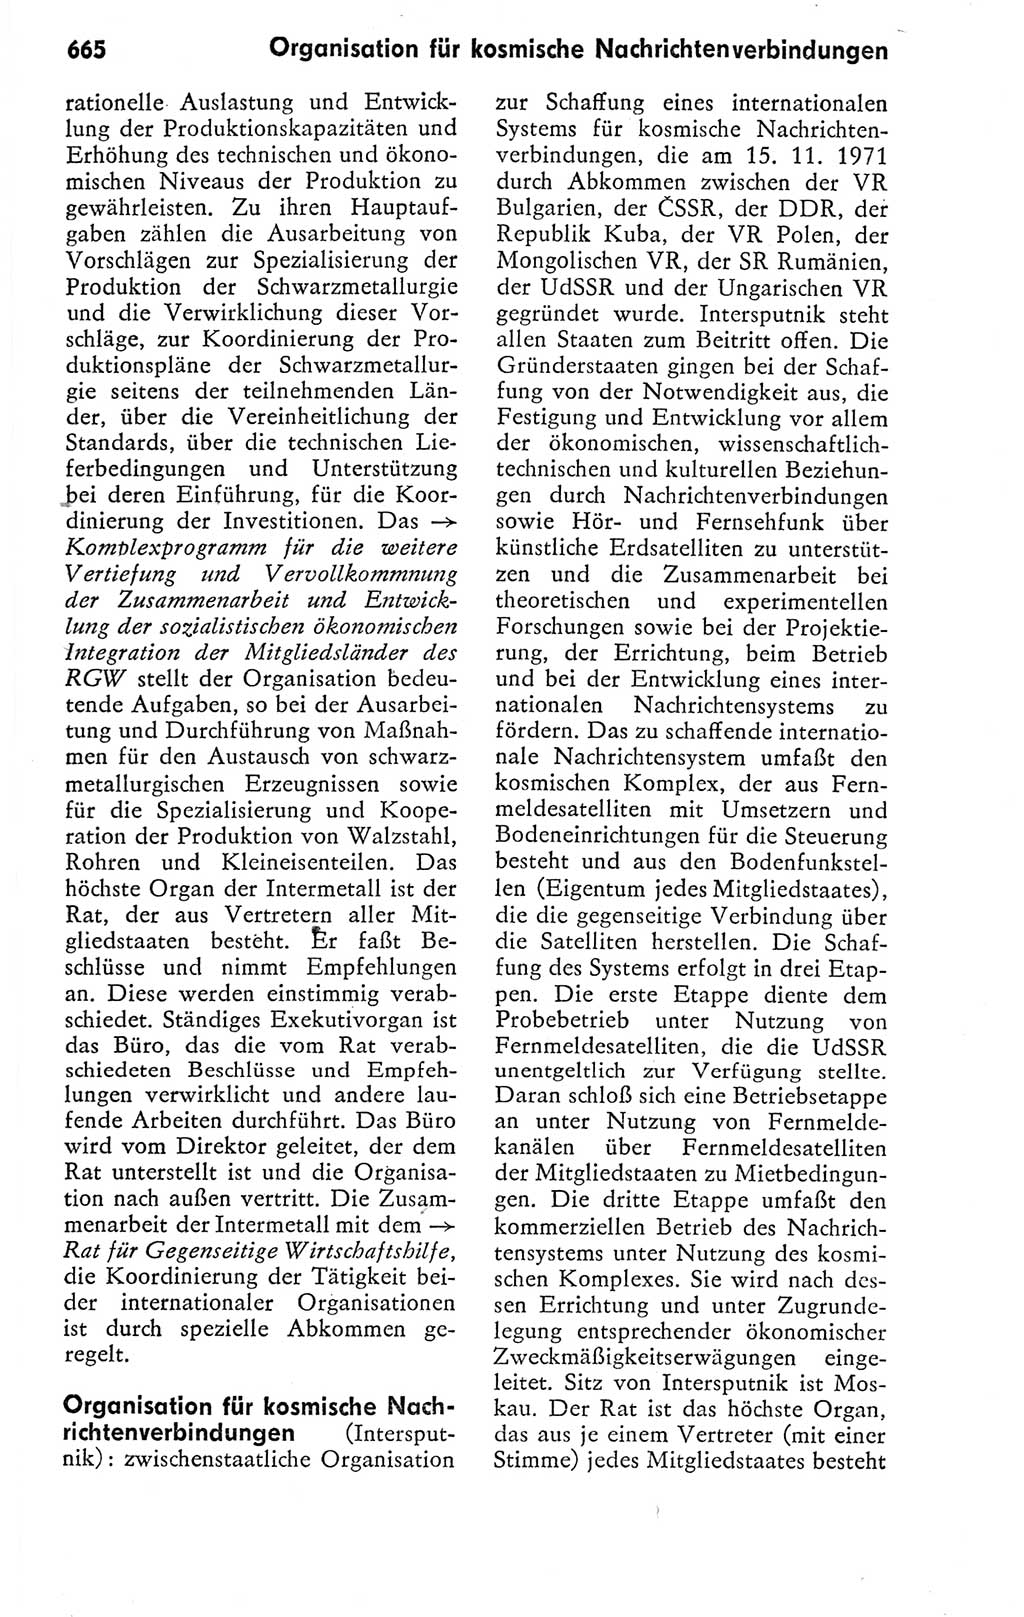 Kleines politisches Wörterbuch [Deutsche Demokratische Republik (DDR)] 1978, Seite 665 (Kl. pol. Wb. DDR 1978, S. 665)